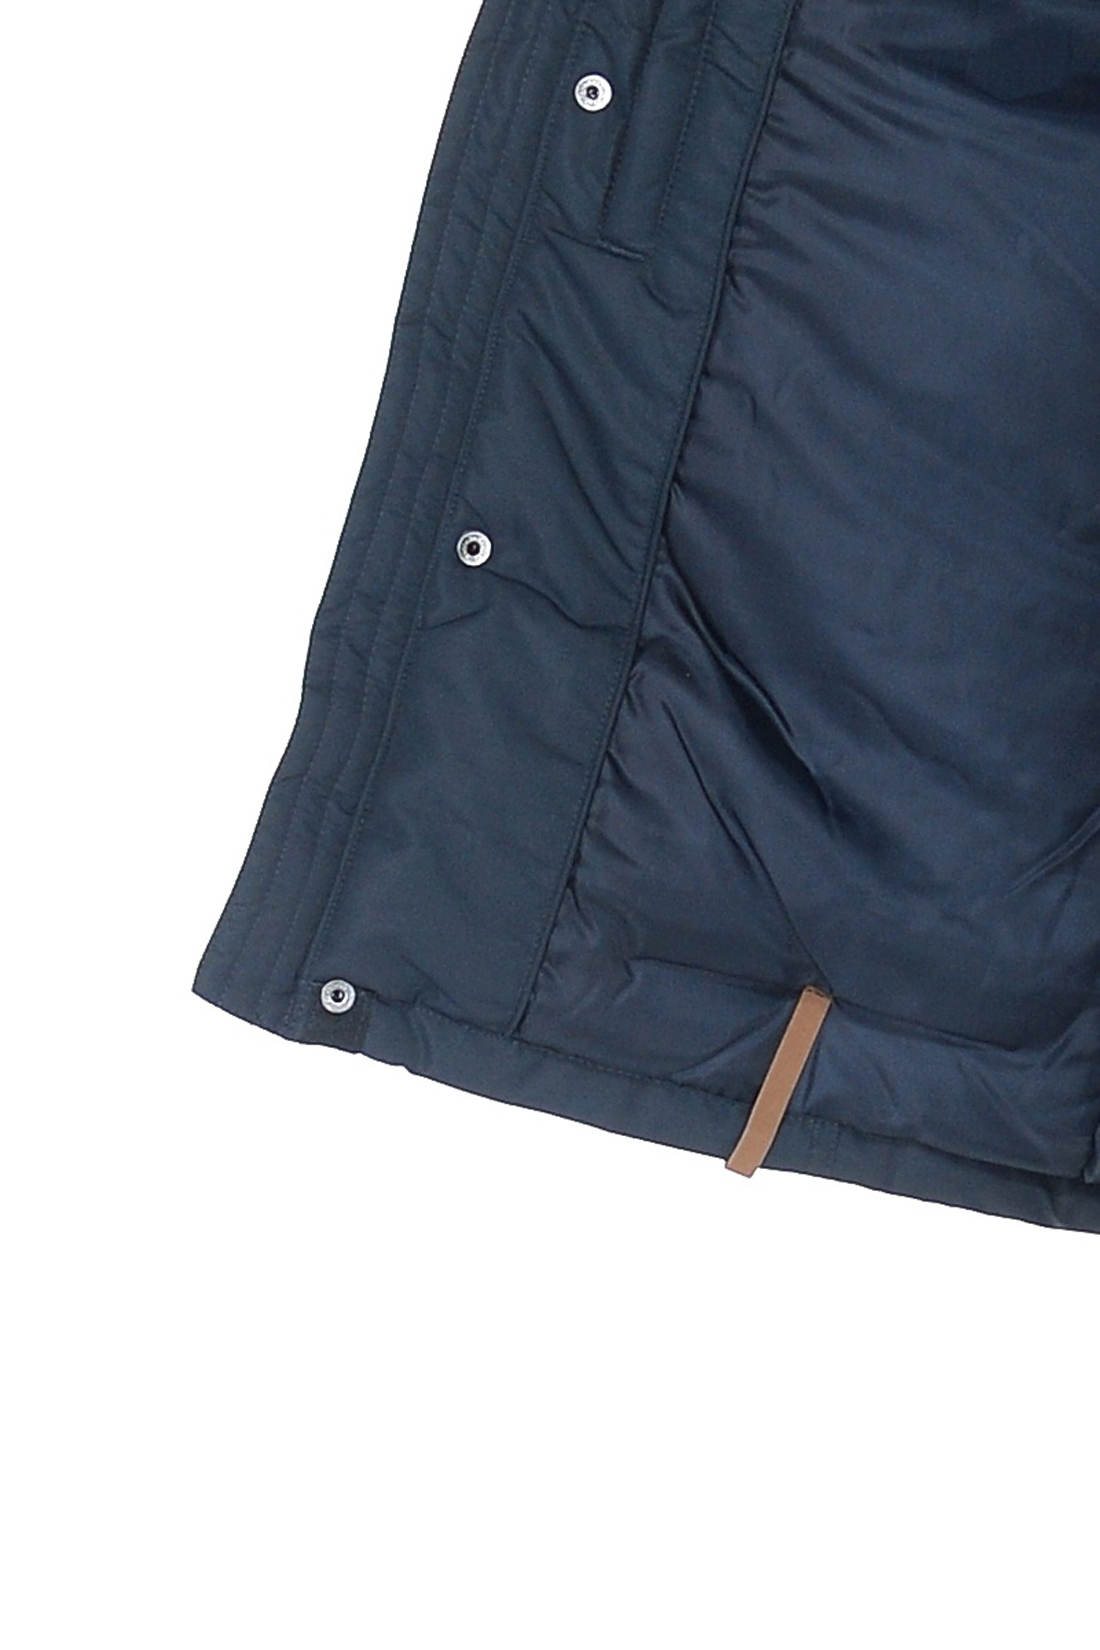 Куртка с отделкой из кожи (арт. baon B538022), размер S, цвет синий Куртка с отделкой из кожи (арт. baon B538022) - фото 5